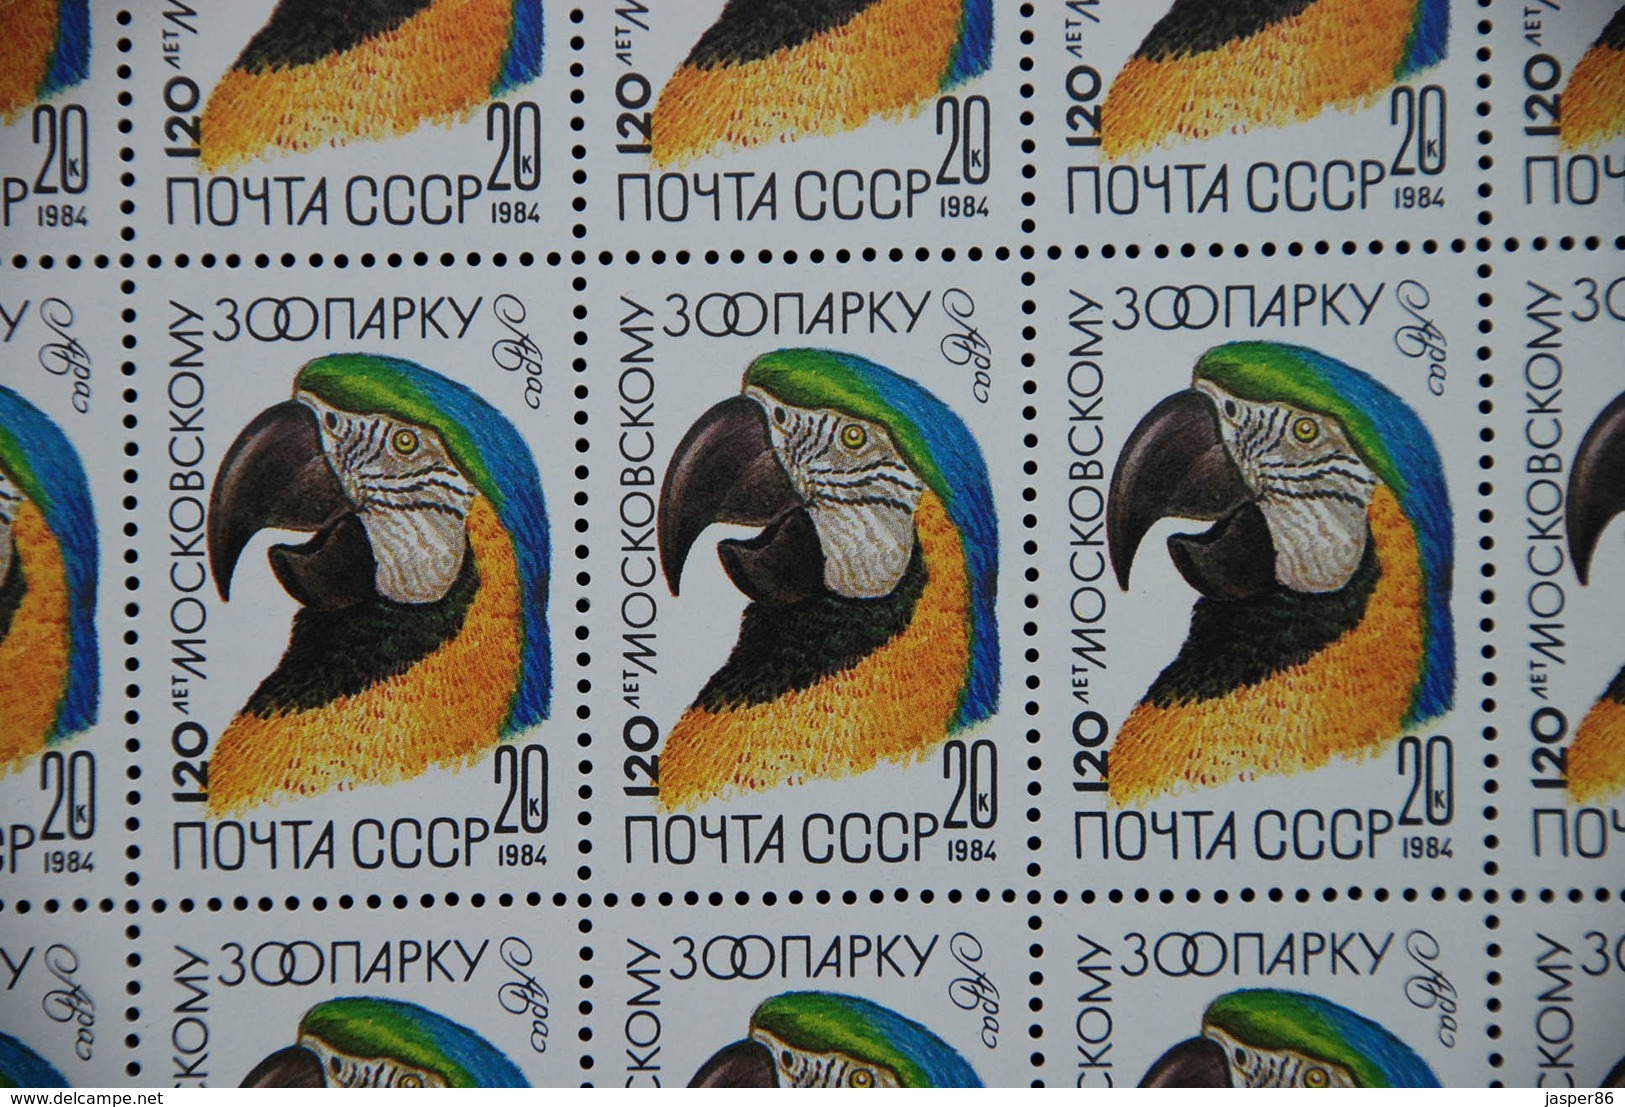 RUSSIA 1984 MNH Sc 5226-30, Mi 5356-60 Macaw, Crane, Leopard Sheets CV46.80 EU - Feuilles Complètes